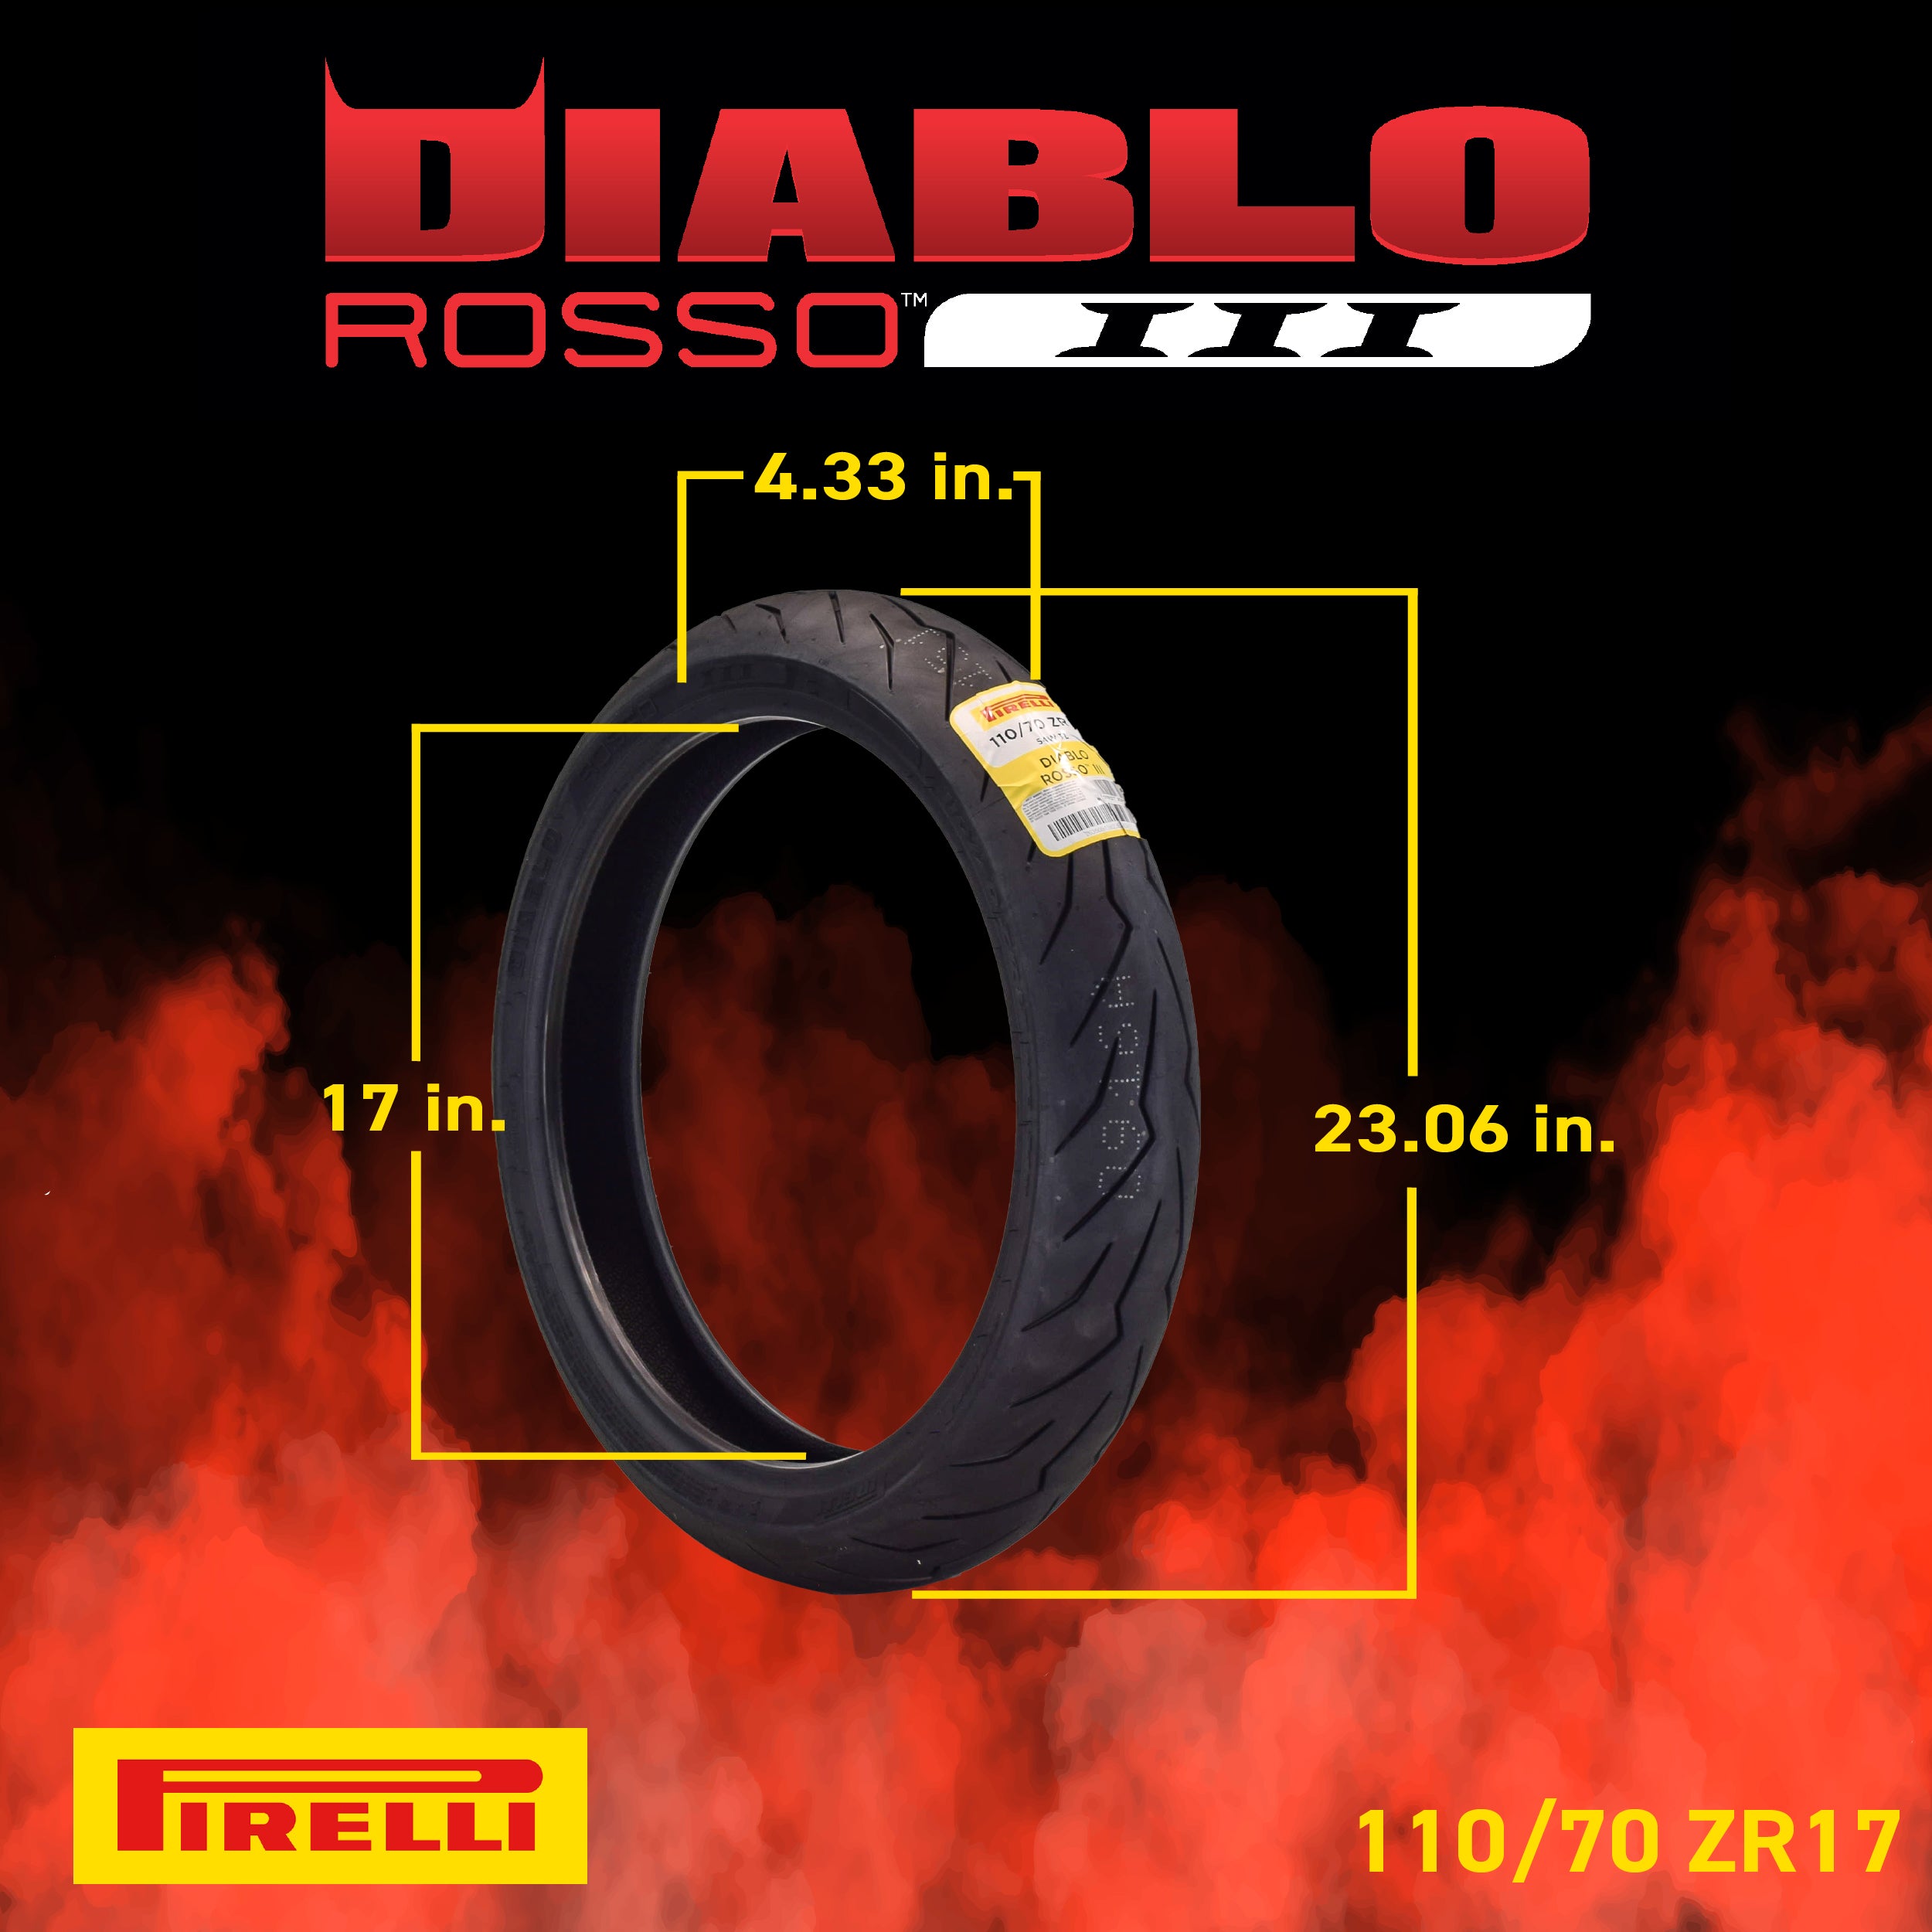 Pirelli Diablo Rosso III 110/70ZR17 200/55ZR17 Front & Rear Motorcycle Tire Set